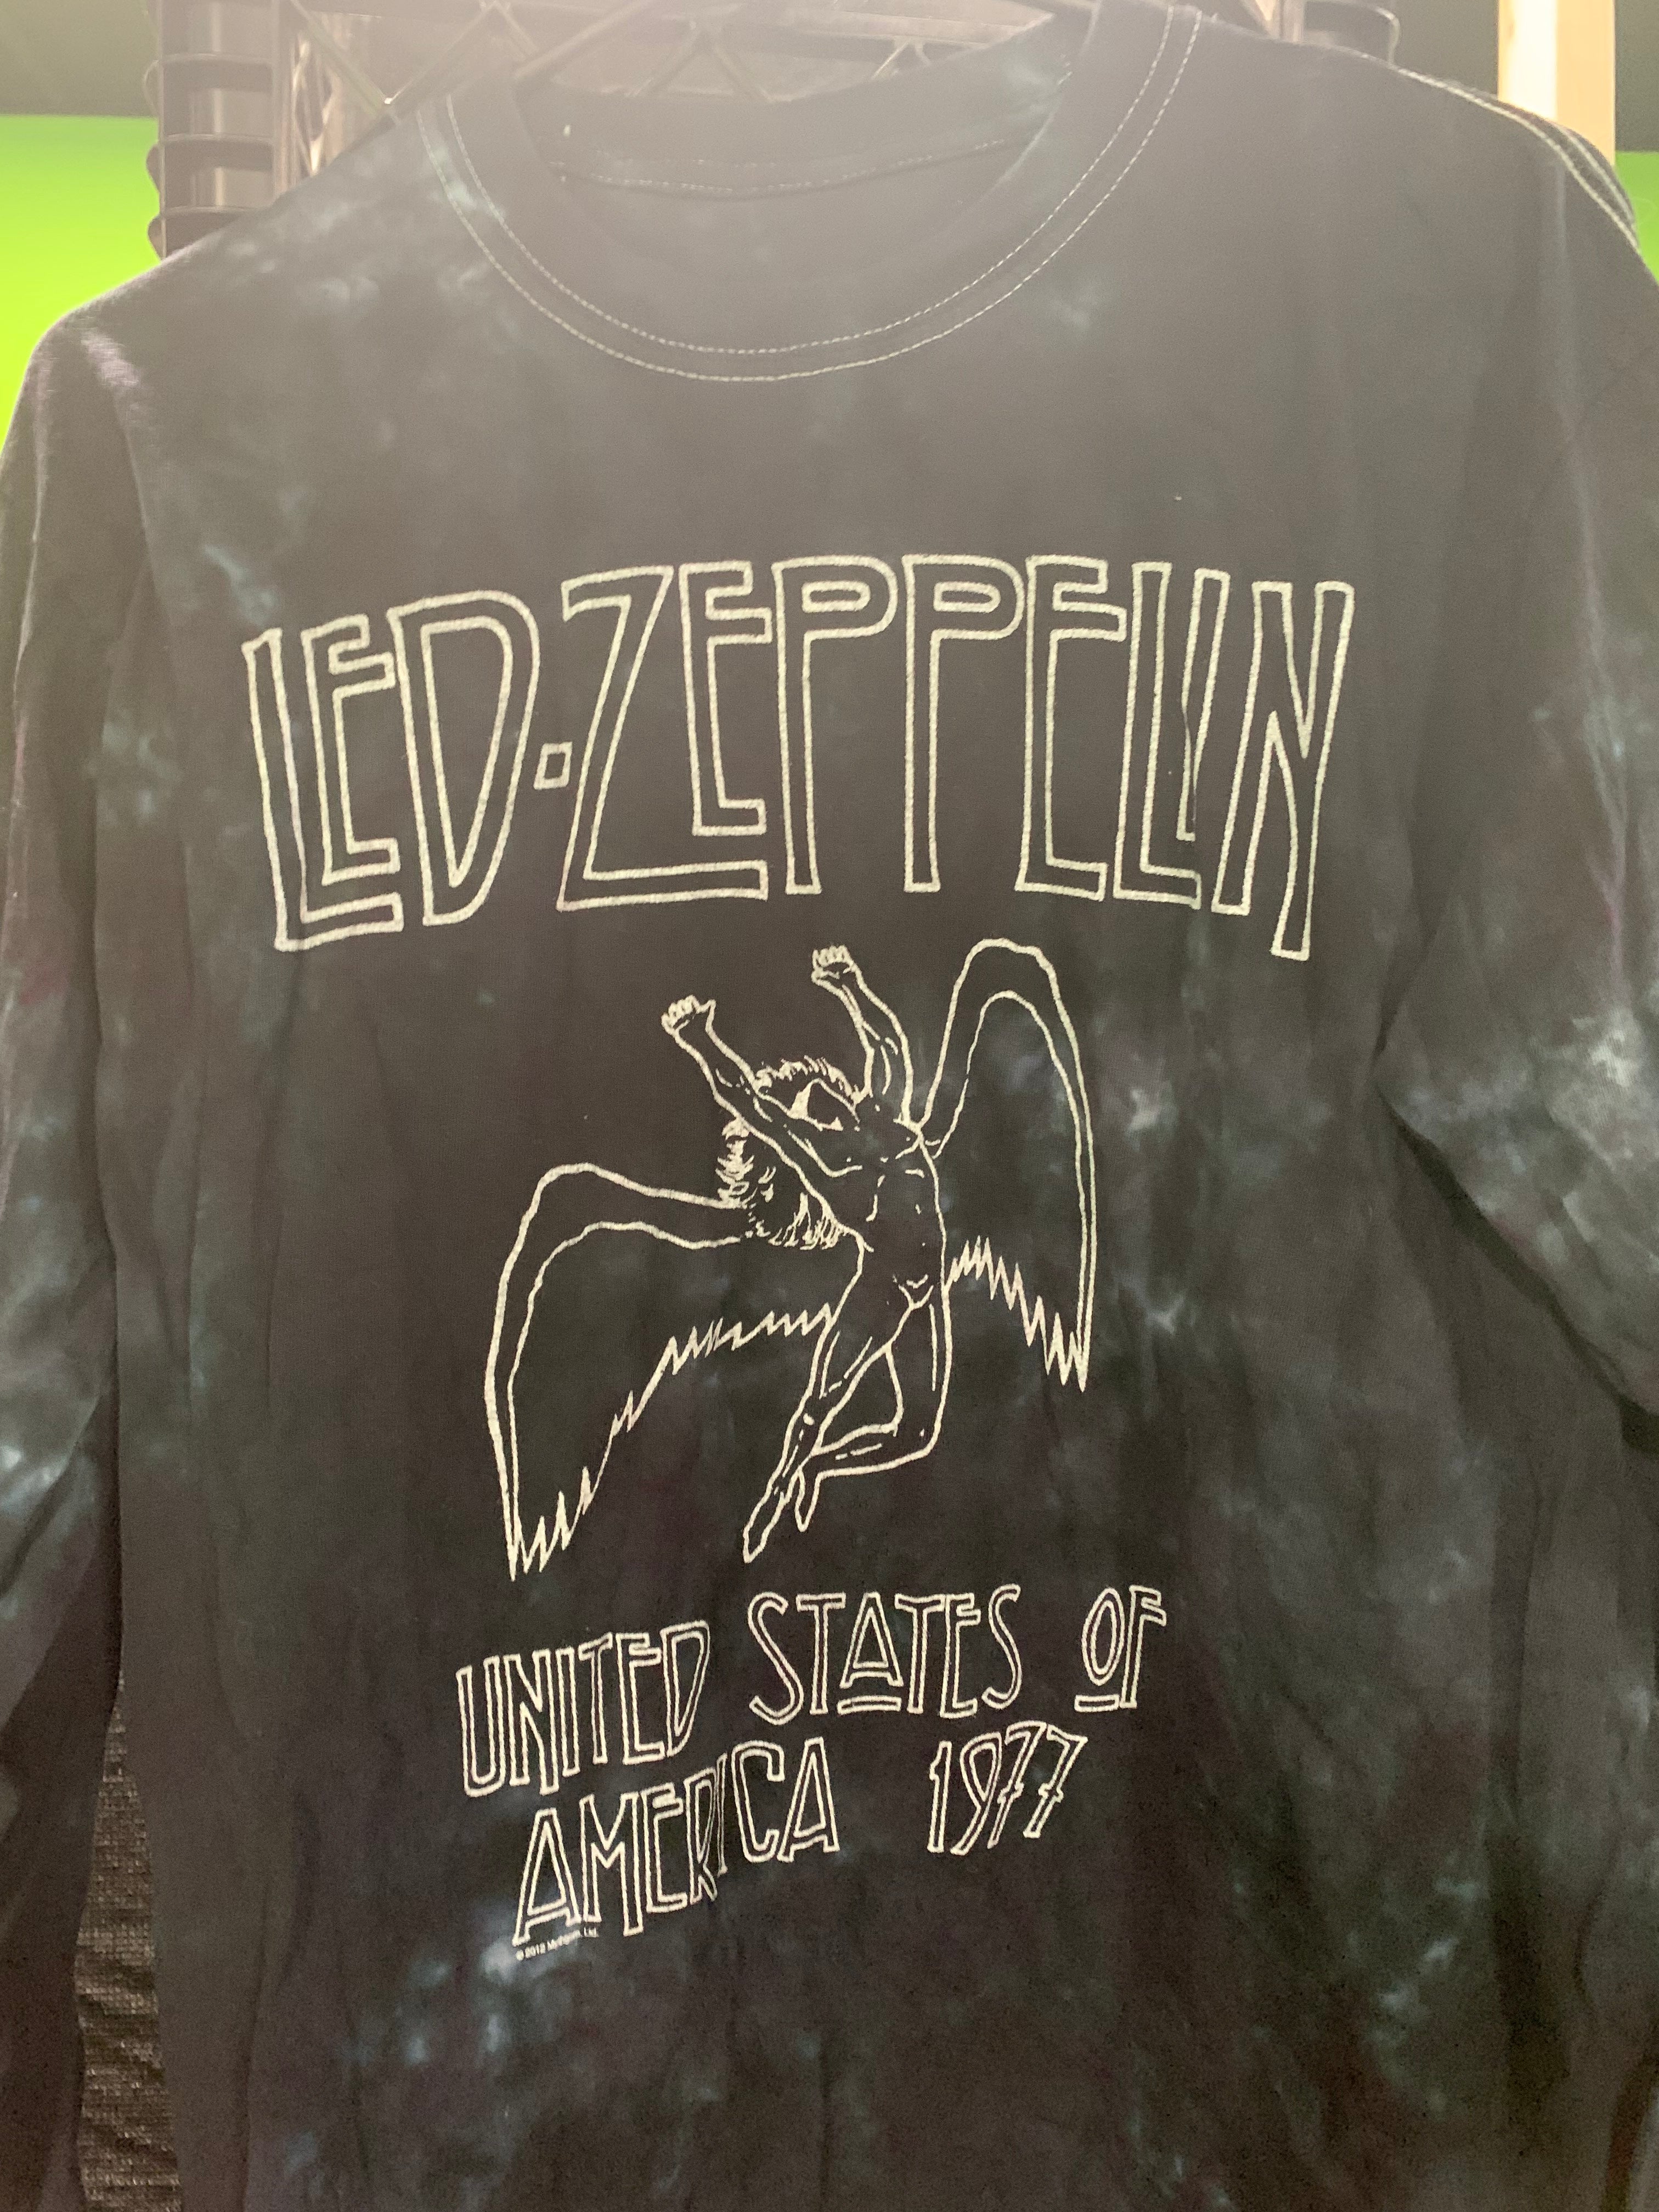 Led Zeppelin USA 1977 Longsleeve (2012 Reprint), Black / Blue Tie Dye, M